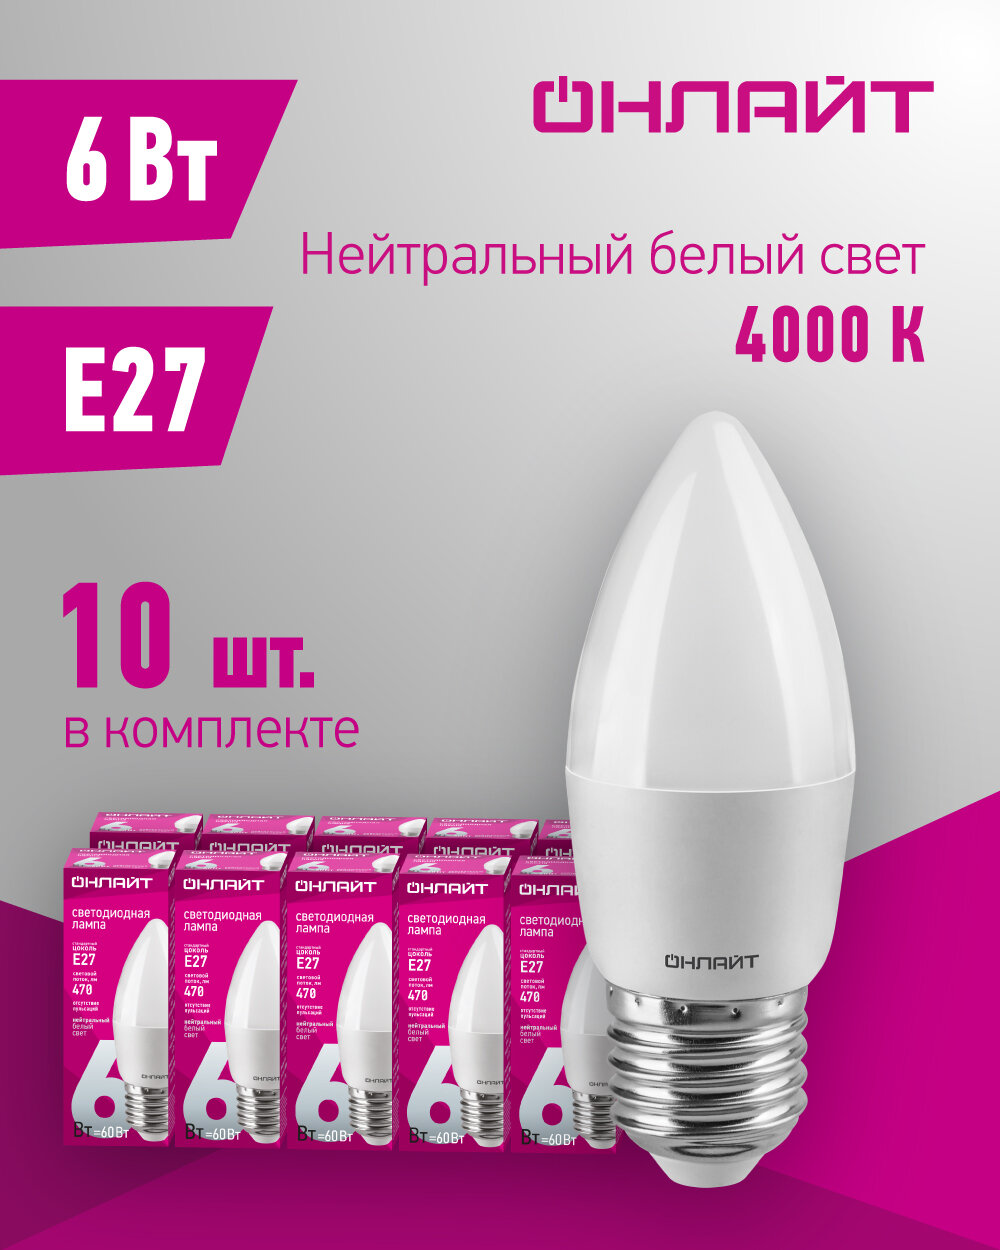 Лампа светодиодная 71 631 OLL-C37-6-230-4K-E27-FR 6Вт свеча 4000К бел. E27 470лм 176-264В онлайт 71631 (10шт. в упак.)